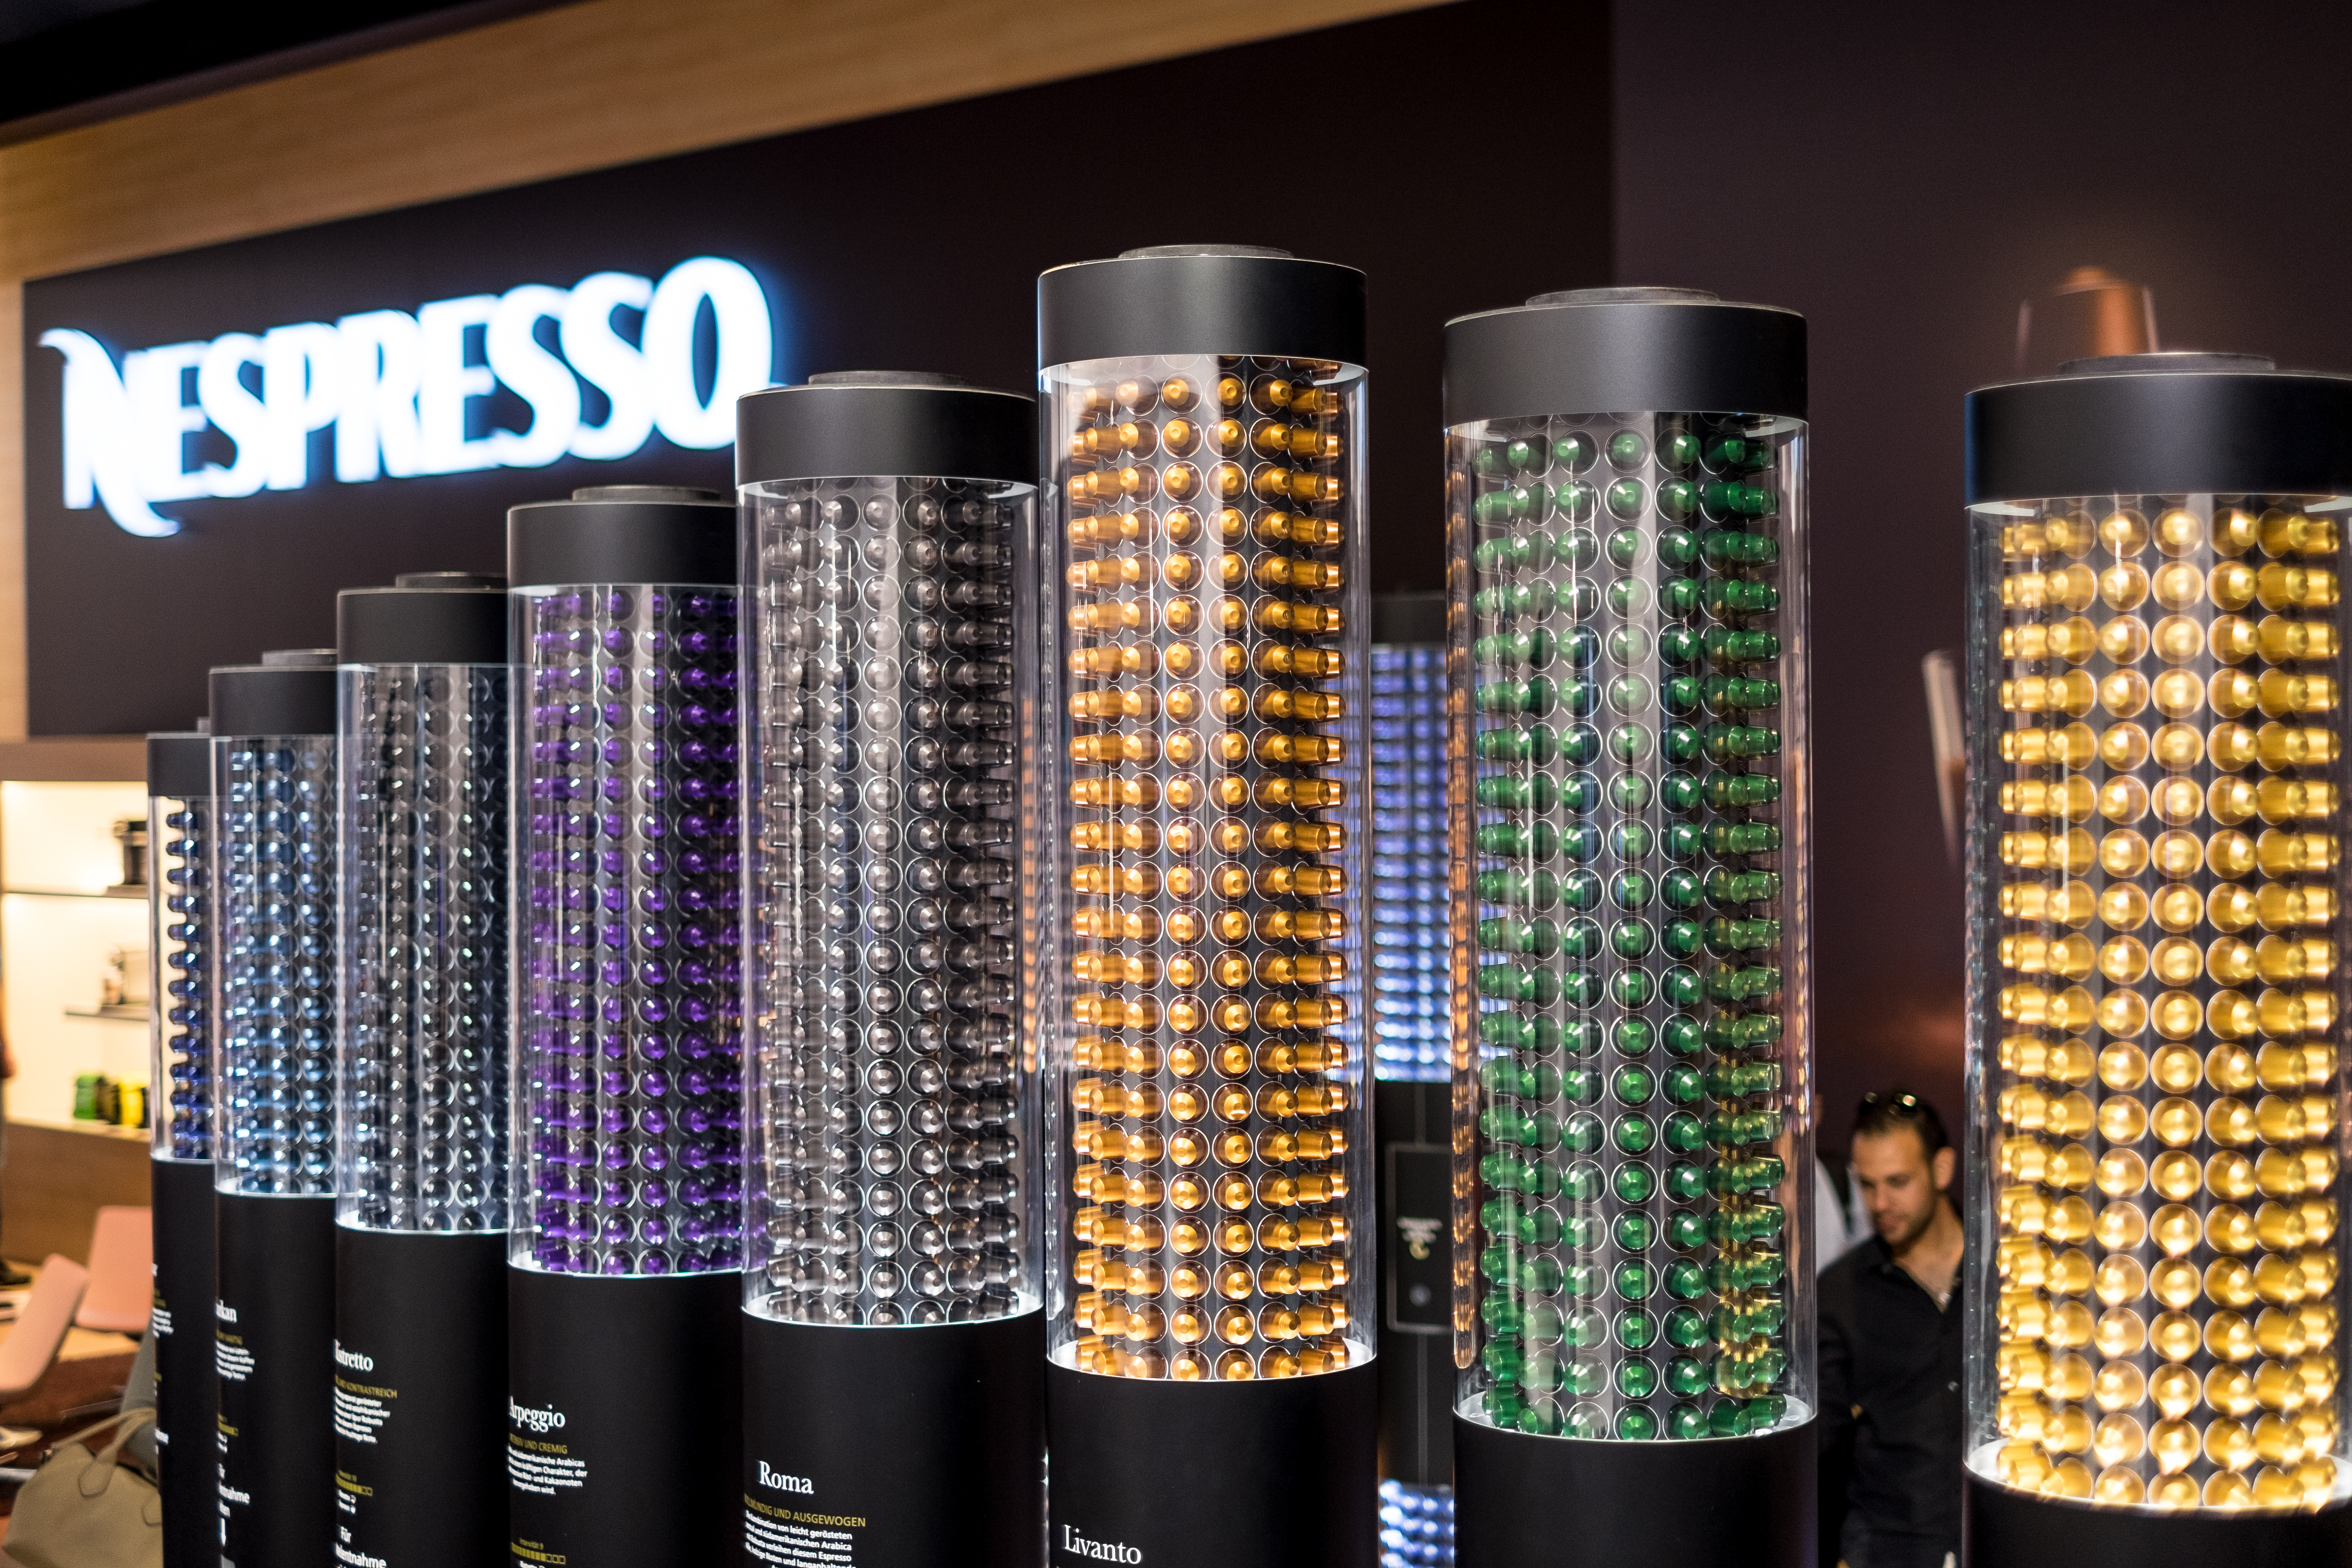 Une photographie montre une exposition de toutes les petites dosettes de café en plastique fabriquées par Nespresso.